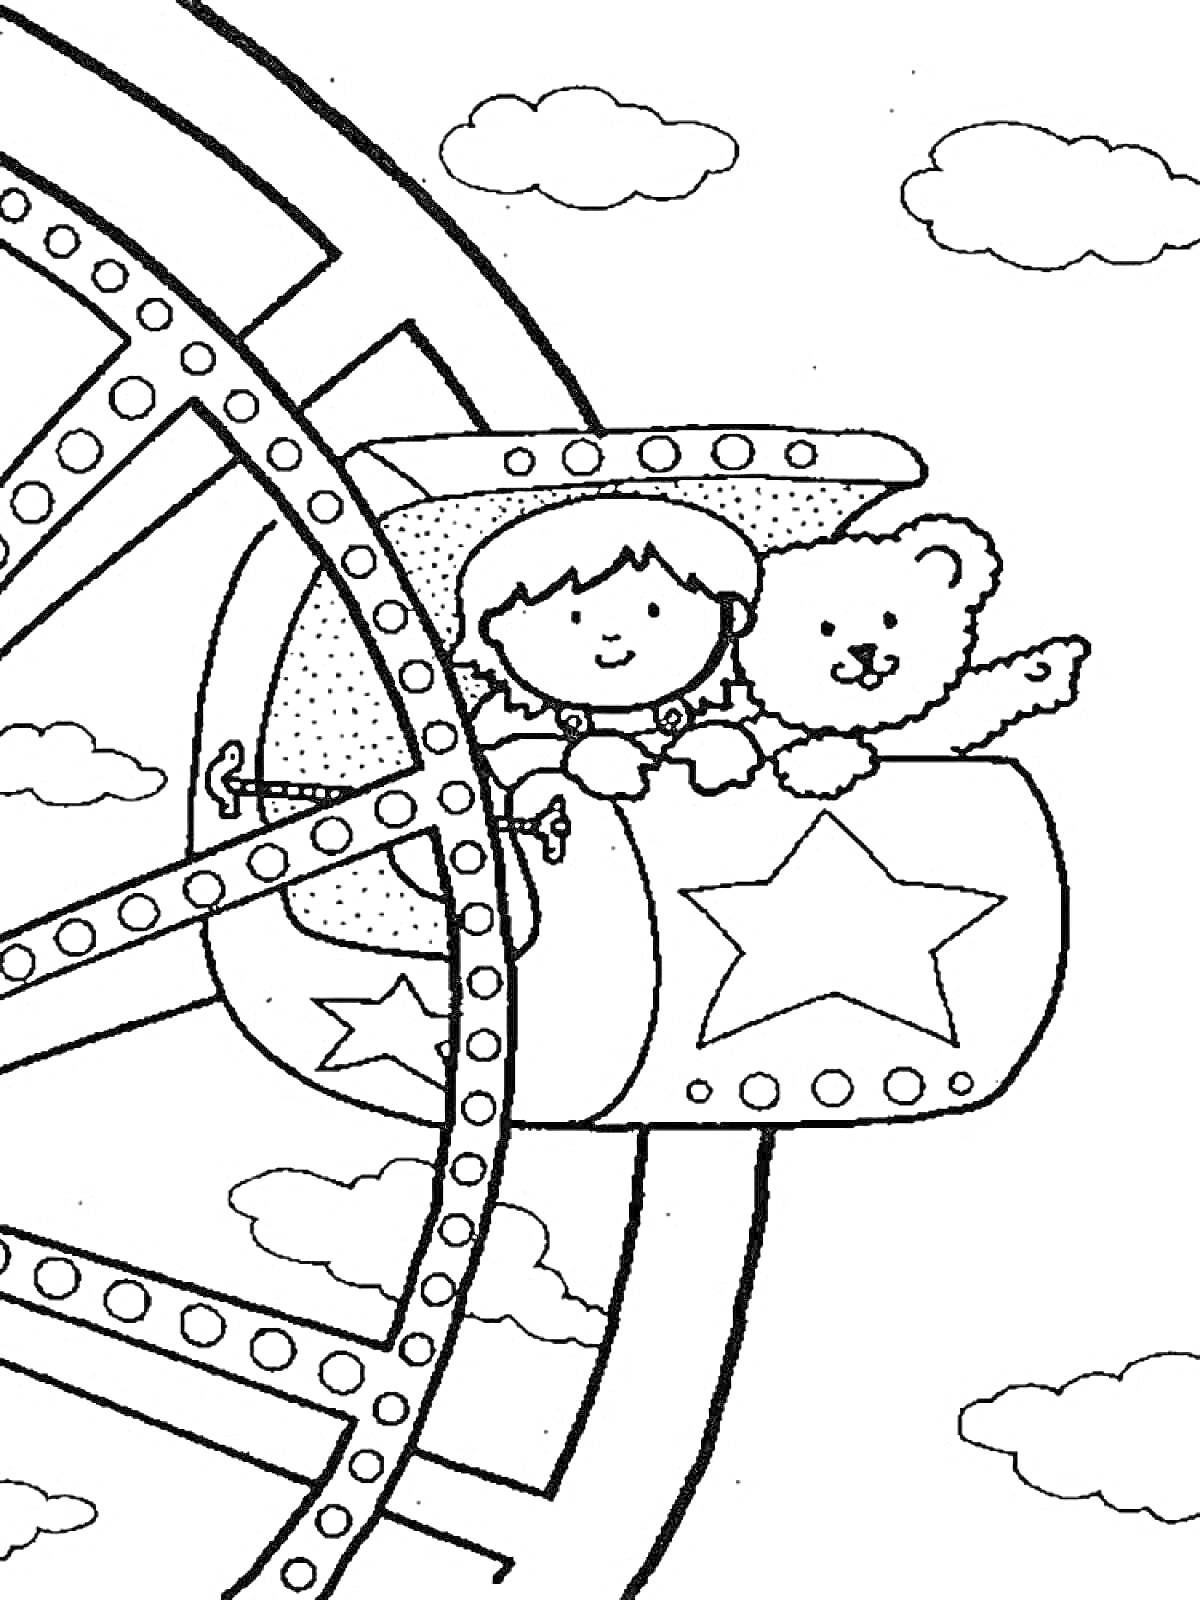 Мальчик и плюшевый мишка на колесе обозрения с облаками на заднем плане